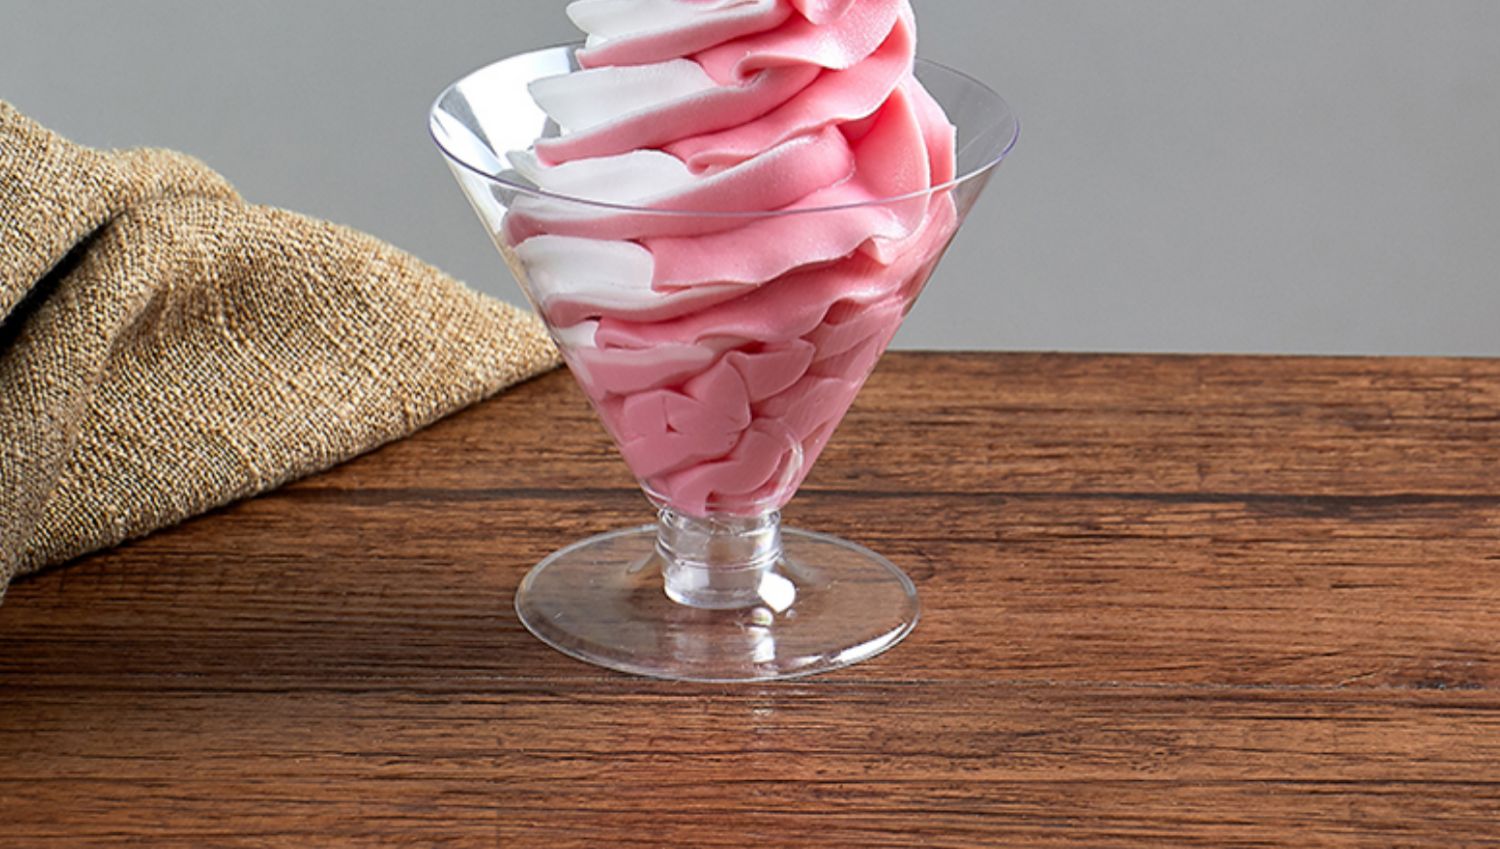 仿真圣代冰淇淋模型 kfc水果圣代杯道具冻酸奶冰激凌玩具 芒果 杂果